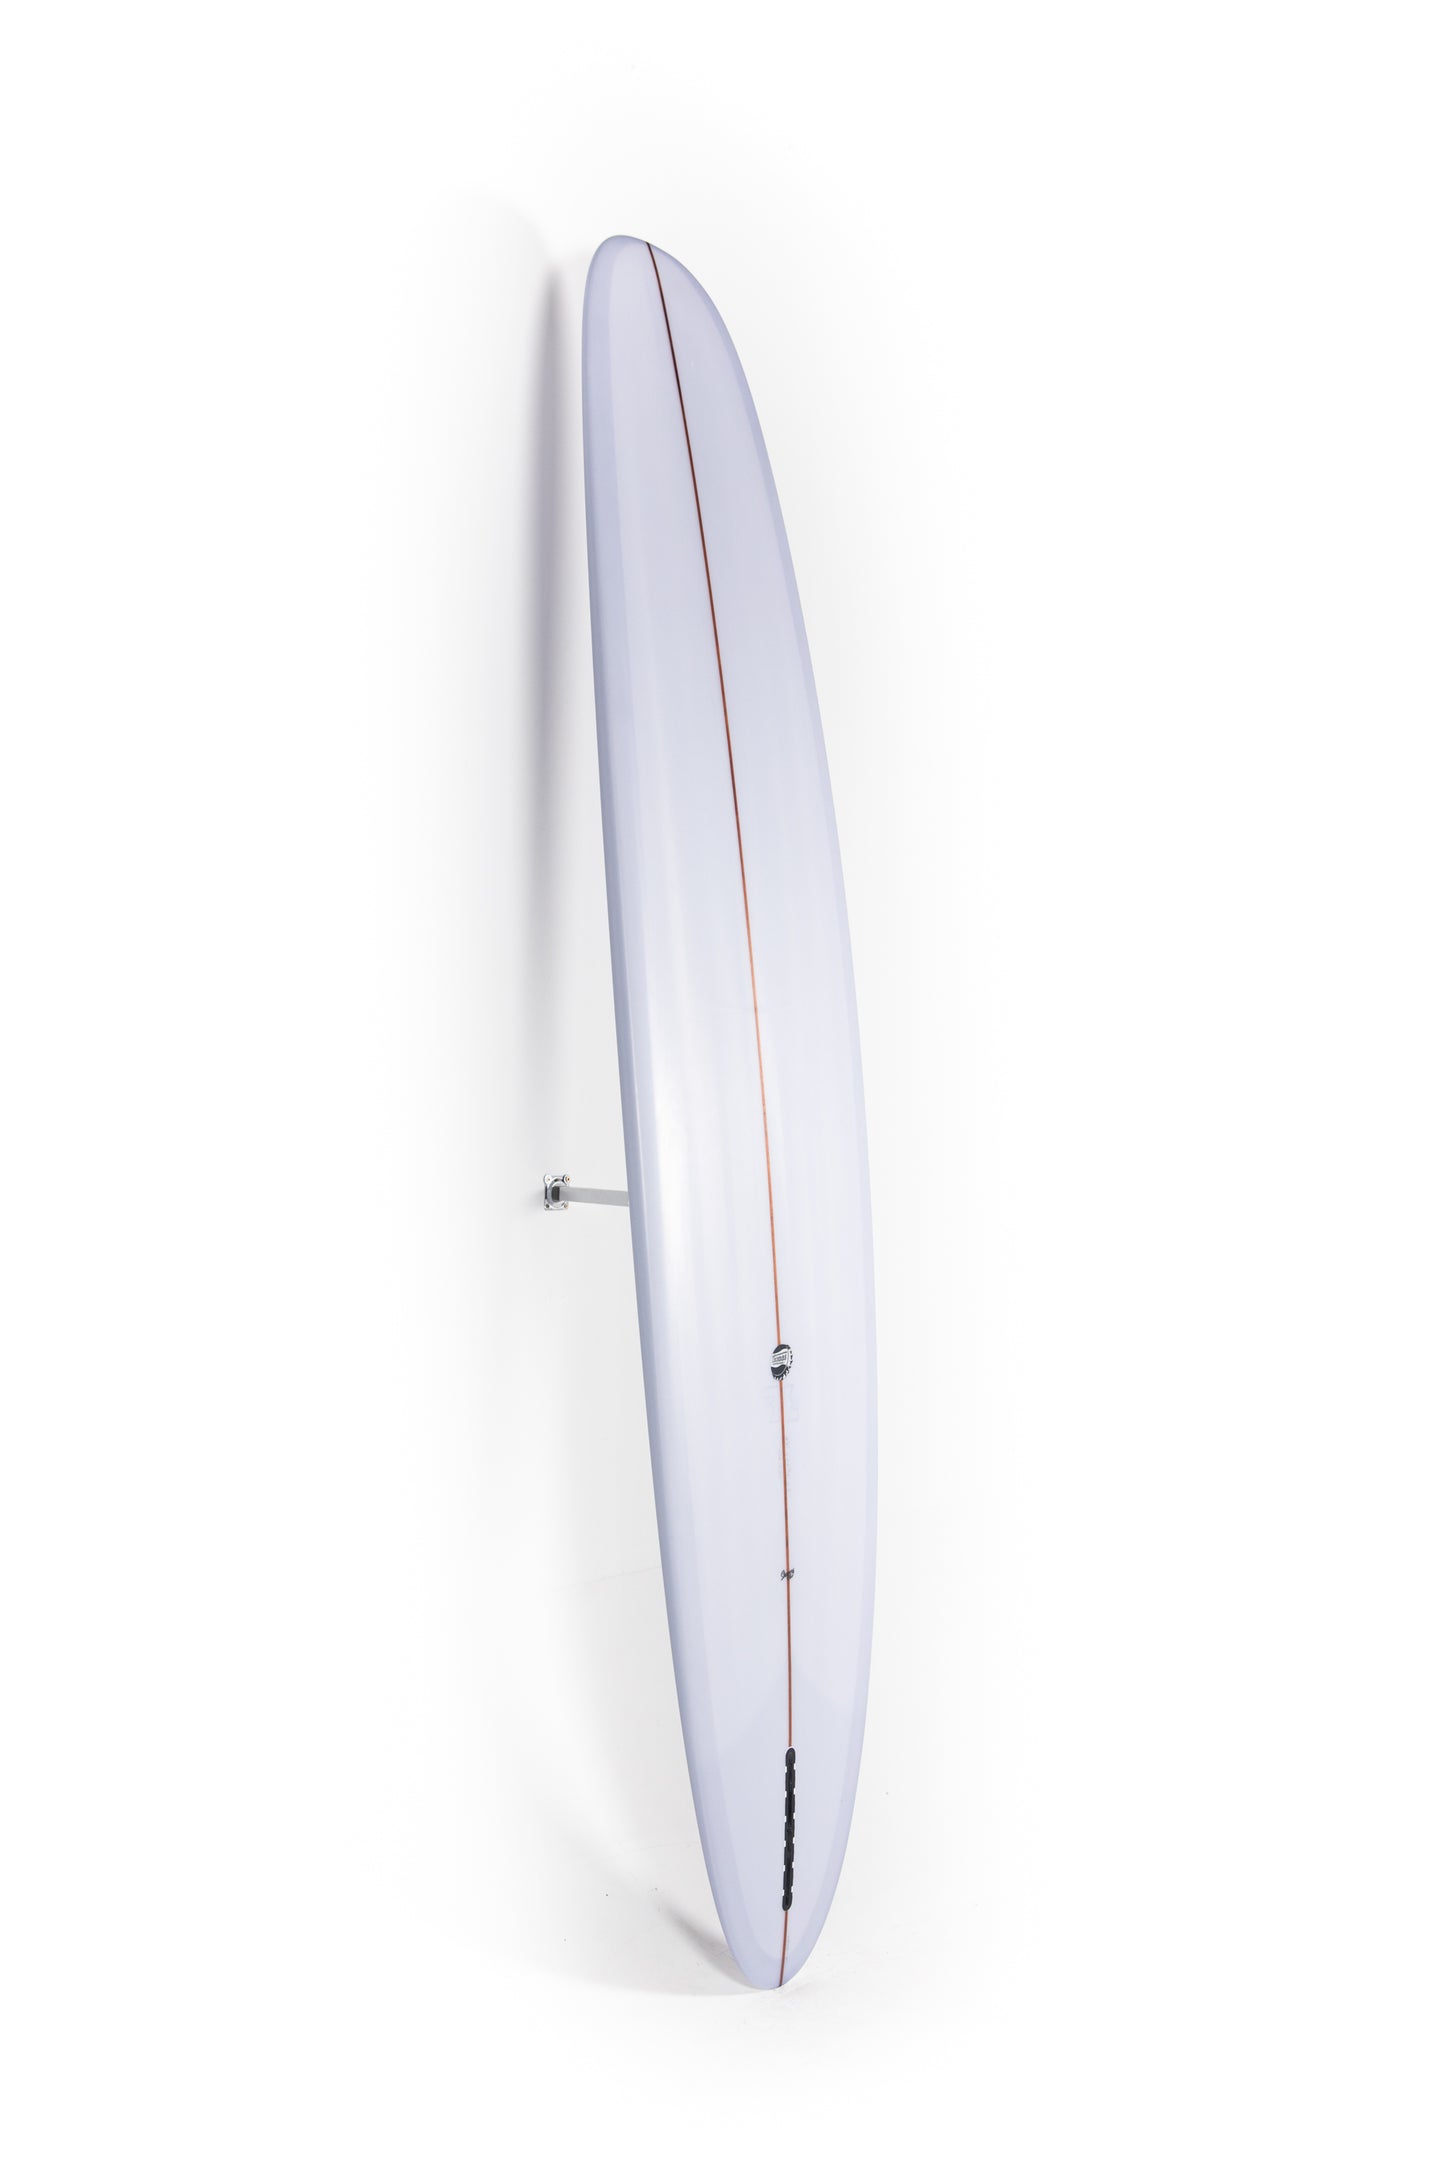 
                  
                    Pukas-Surf-Shop-Thomas-Bexon-Surfboards-Wizl-Thomas-Bexon-9_4_-WIZL94CEMENT
                  
                